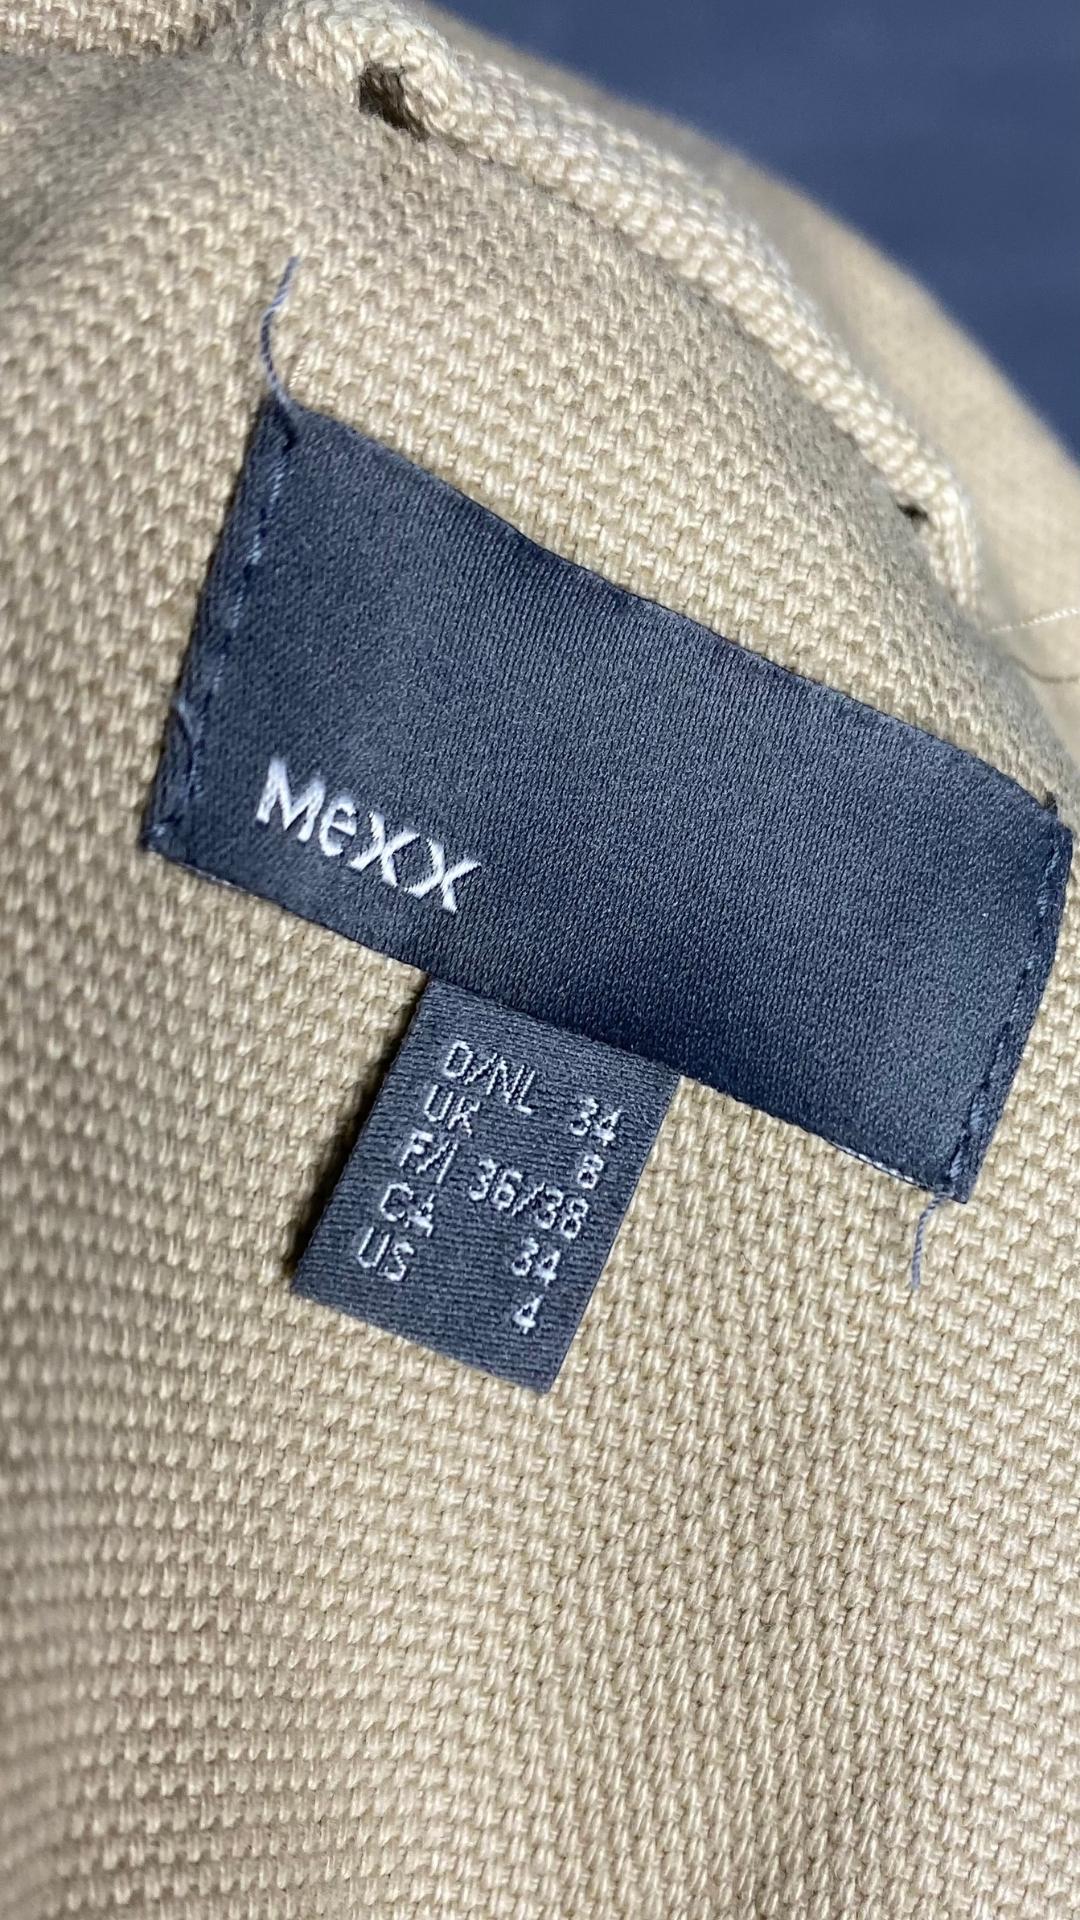 Veste Mexx en grosse toile de coton, robuste et féminine a la fois, vue de l'étiquette de la marque et de la taille